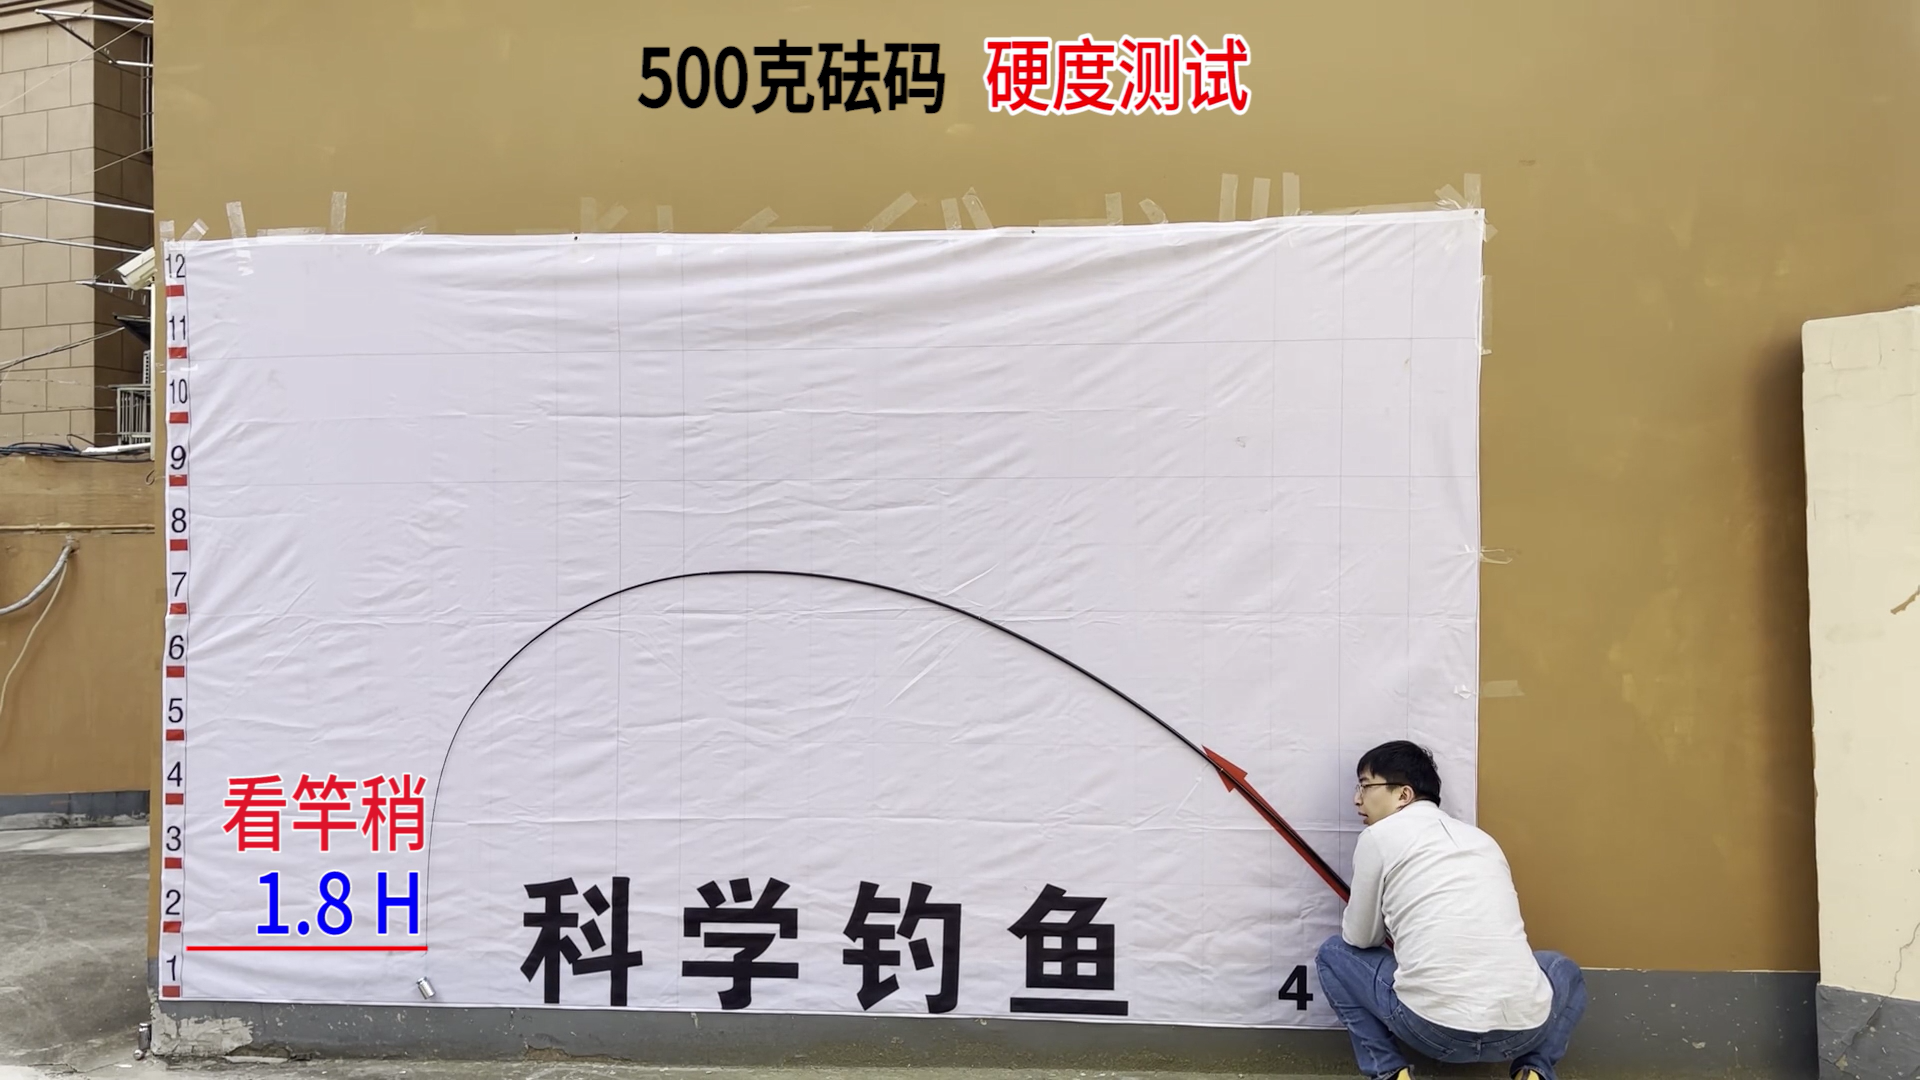 花三百元买了一根日本钓
鱼
竿
，强度不到4公斤，是不是亏了？